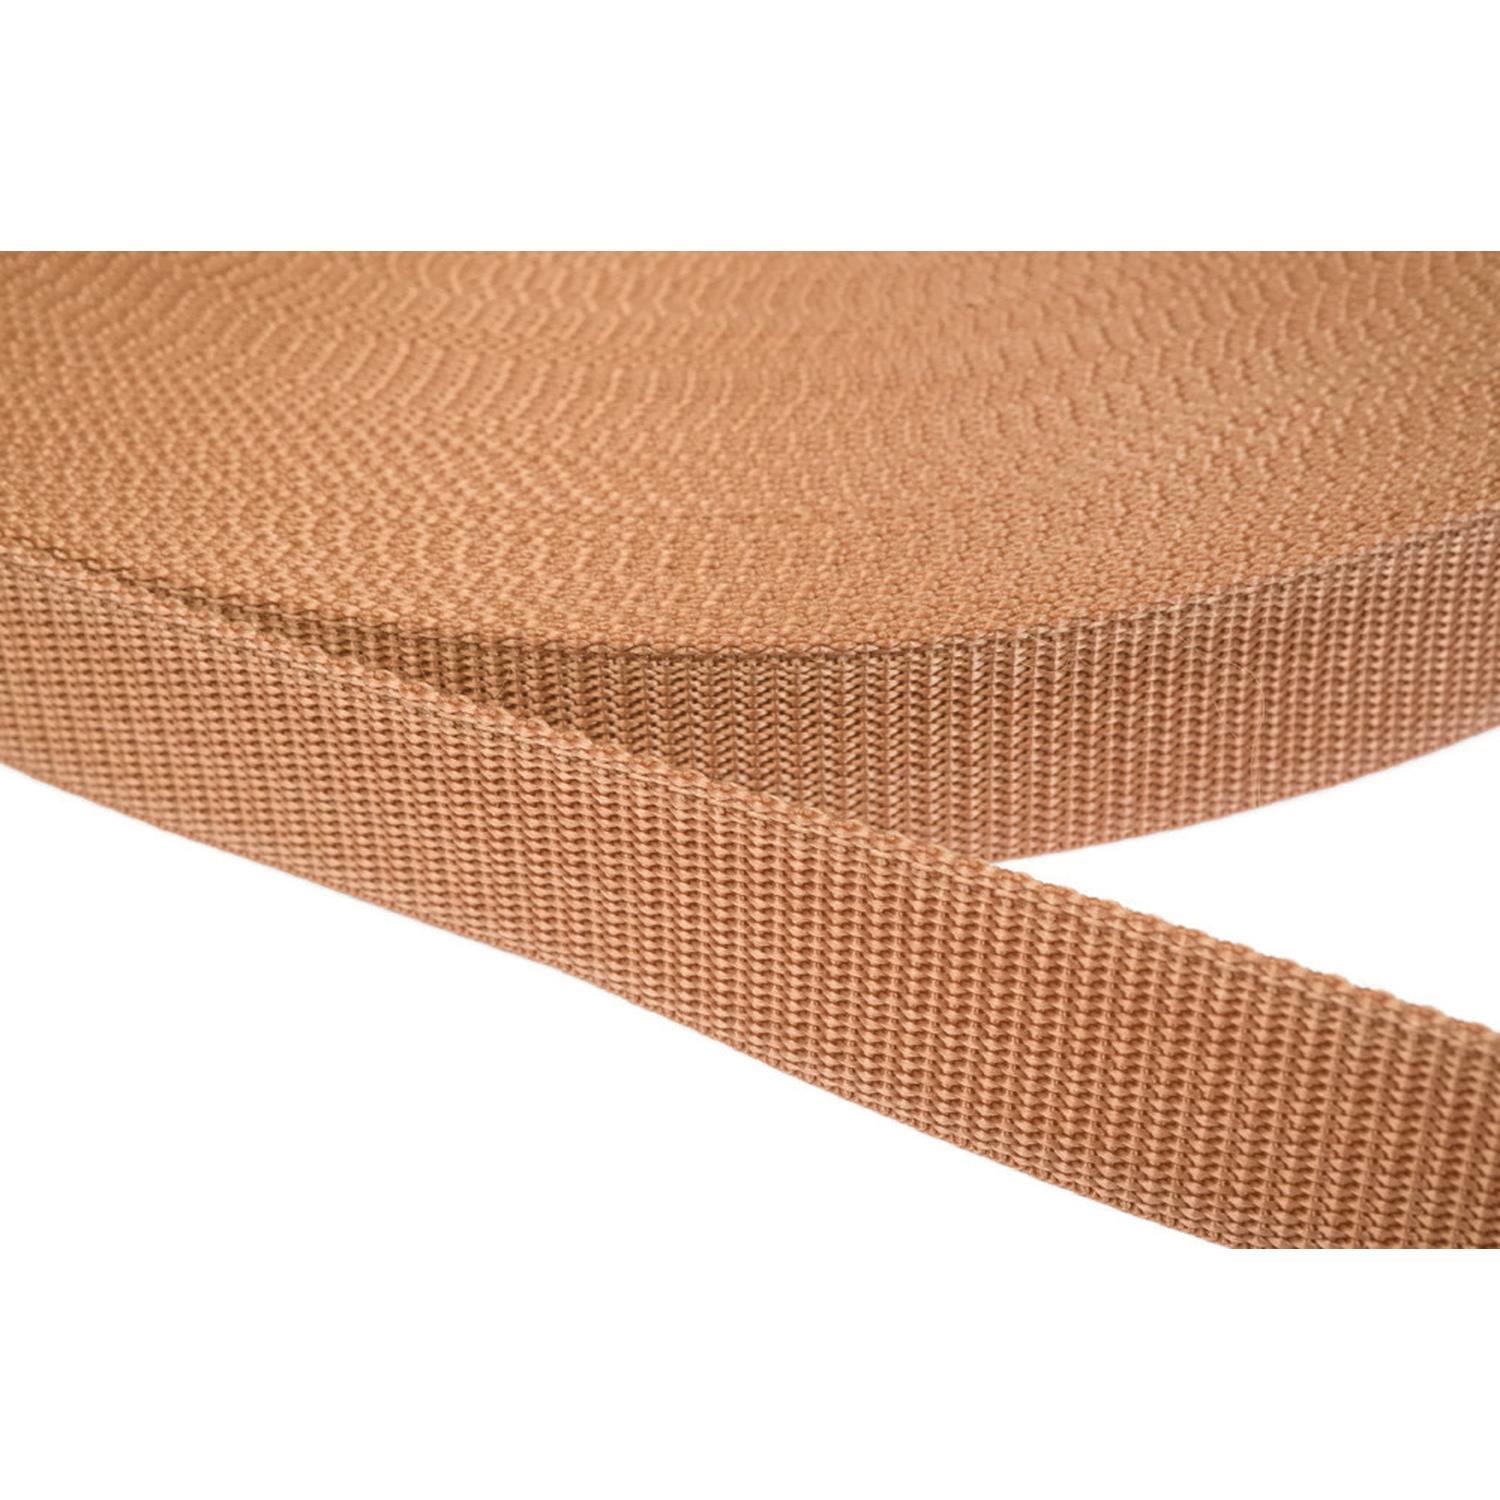 Gurtband 15mm breit aus Polypropylen in 41 Farben 06 - hellbraun 50 Meter